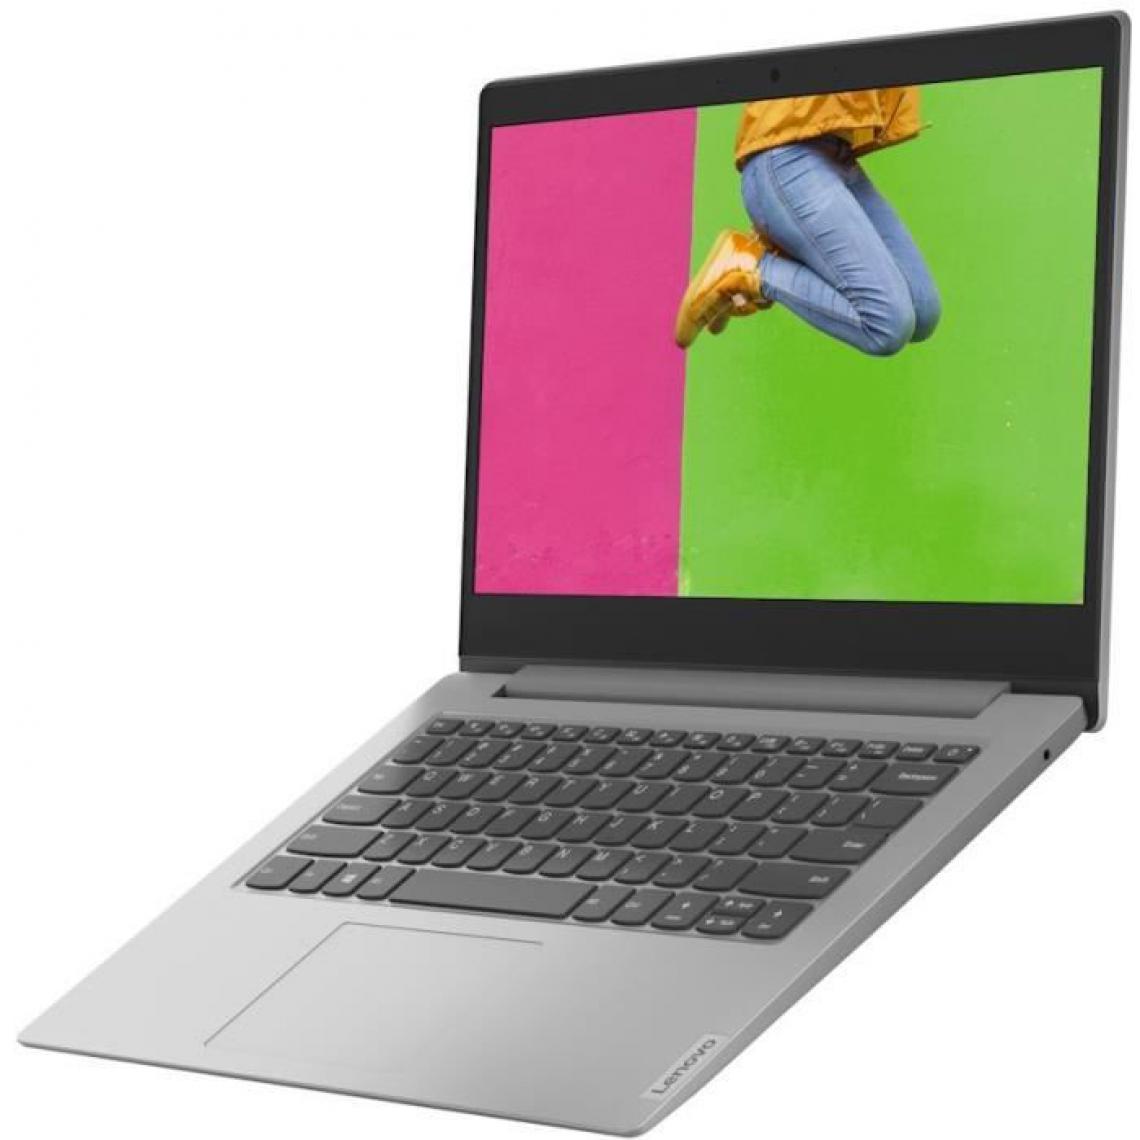 Lenovo - PC Portable Ultrabook - LENOVO Ideapad 1 14IGL05 - 14 FHD - Intel Celeron N4020 - RAM 4 Go - 128Go SSD - Windows 10 - AZERTY - PC Portable